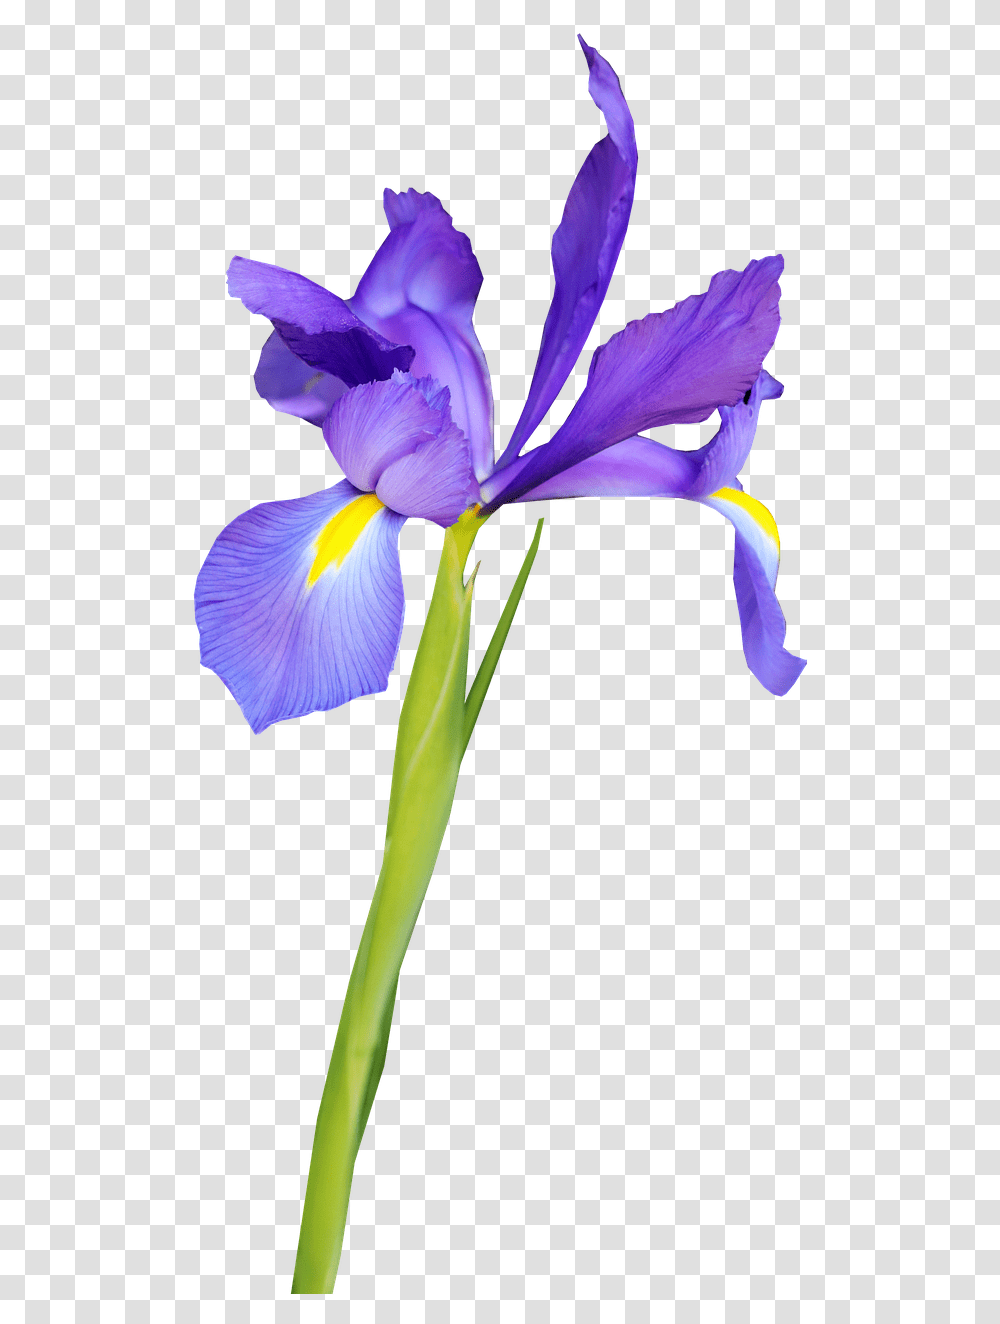 Flower Blue Iris Flor De Iris, Plant, Blossom, Petal, Bird Transparent Png